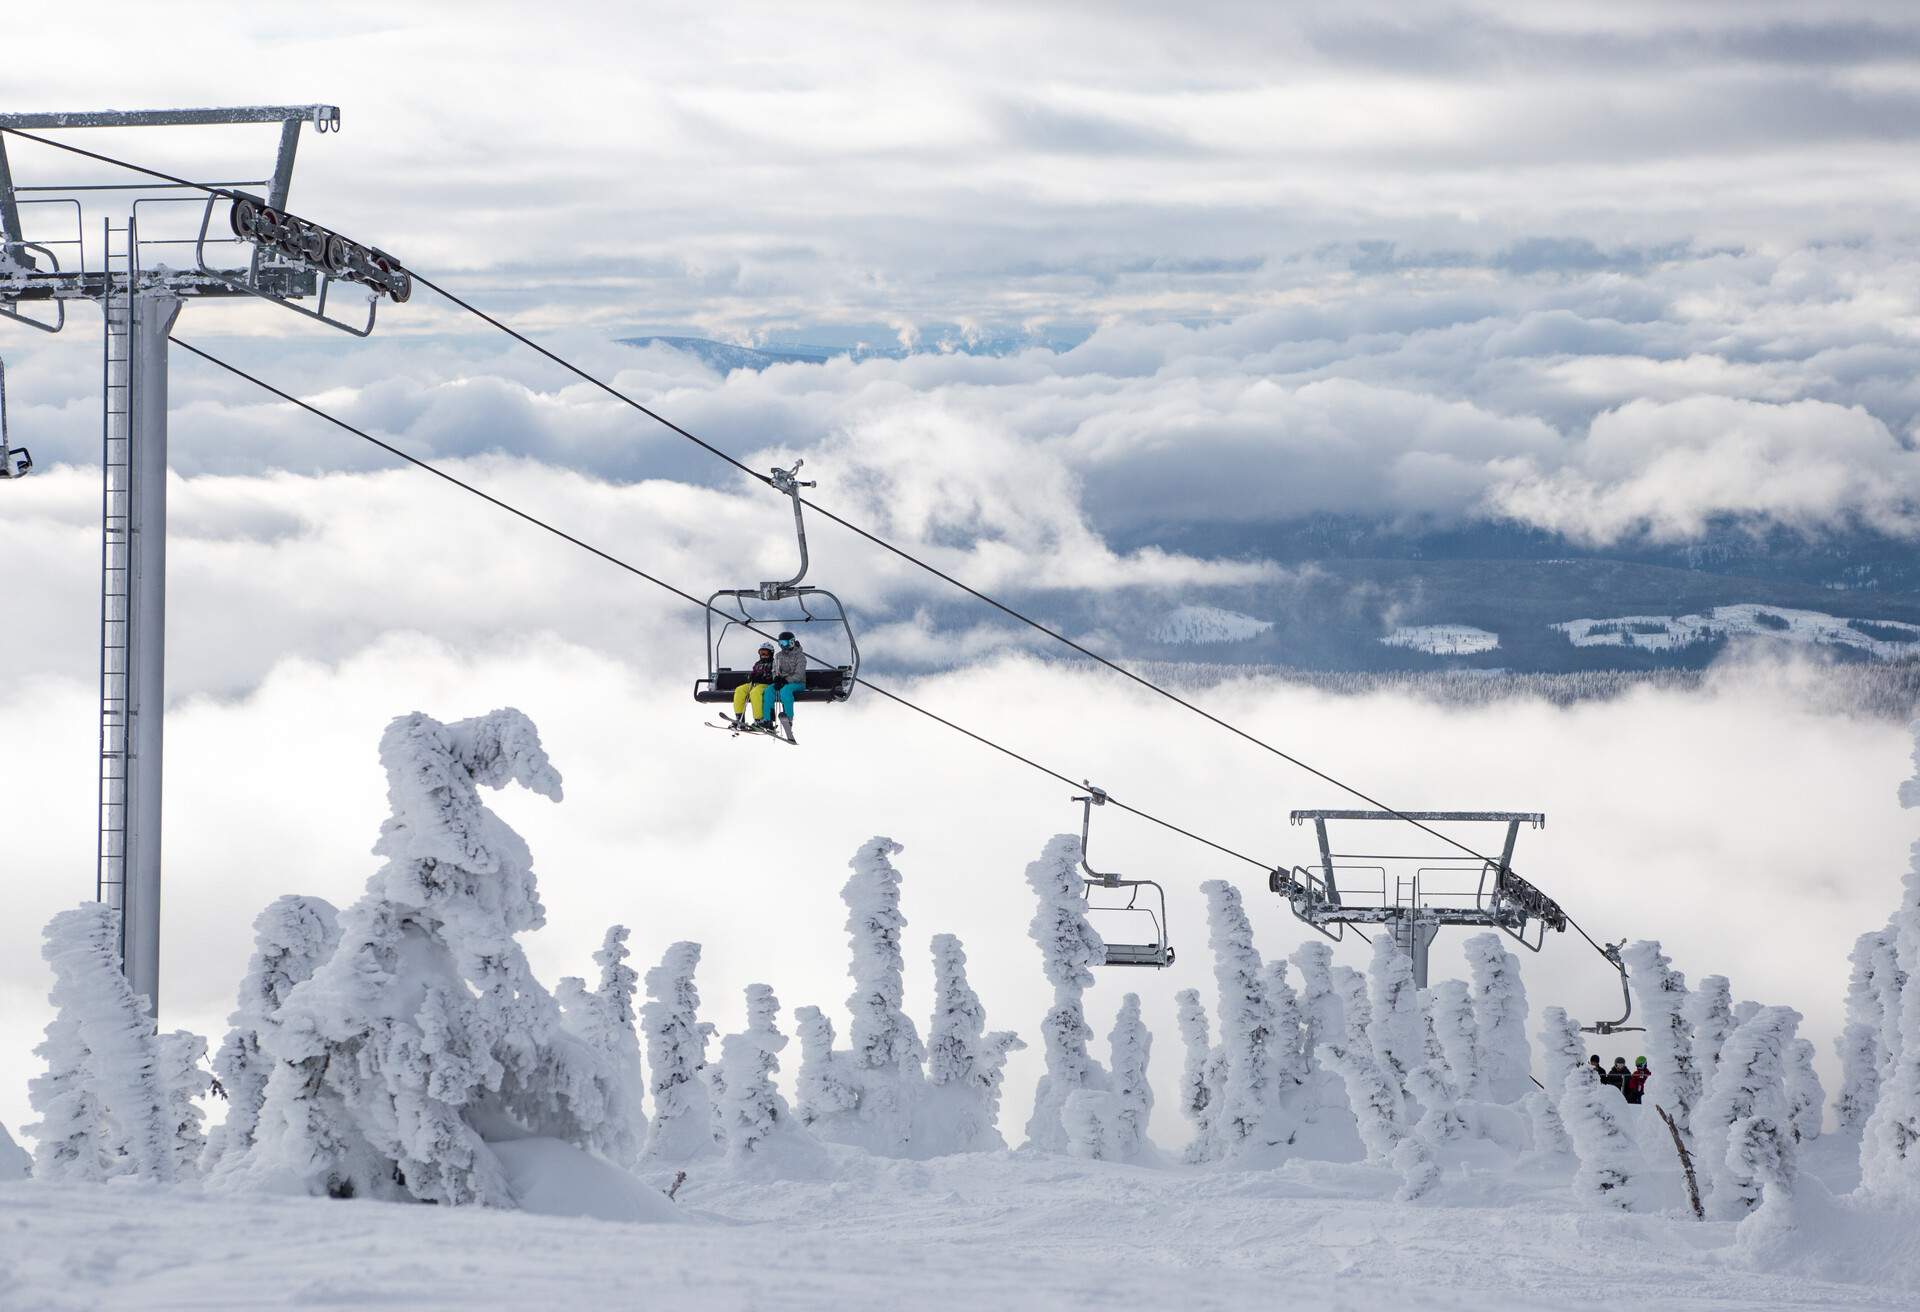 Ski or snowboard on chairlift at Big White Resort, Kelowna, British Columbia, Canada; Shutterstock ID 1051495679; Purpose: destiny; Brand (KAYAK, Momondo, Any): any